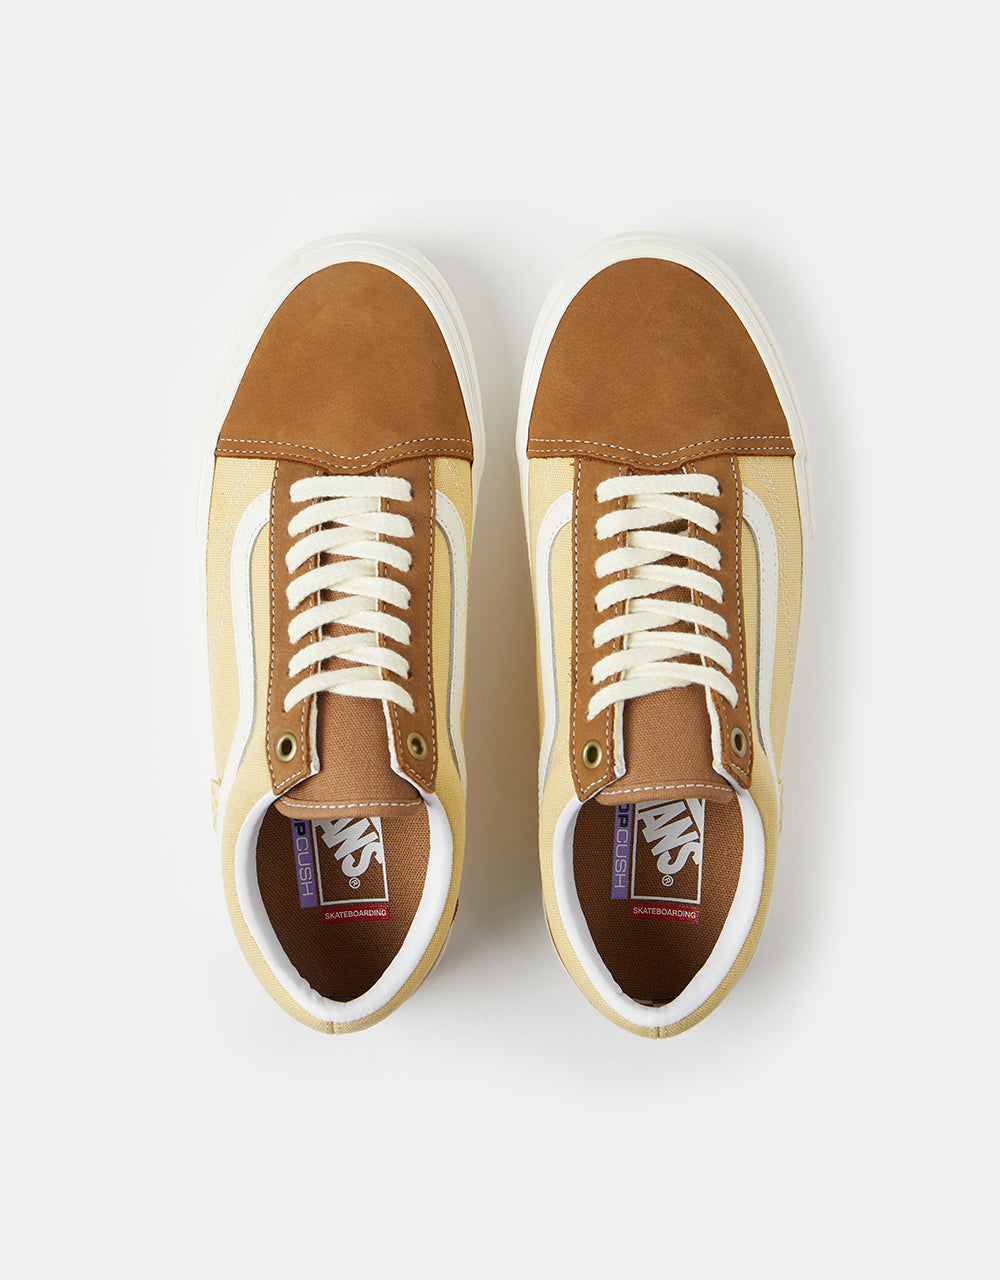 Vans Skate Old Skool Shoes - Brown